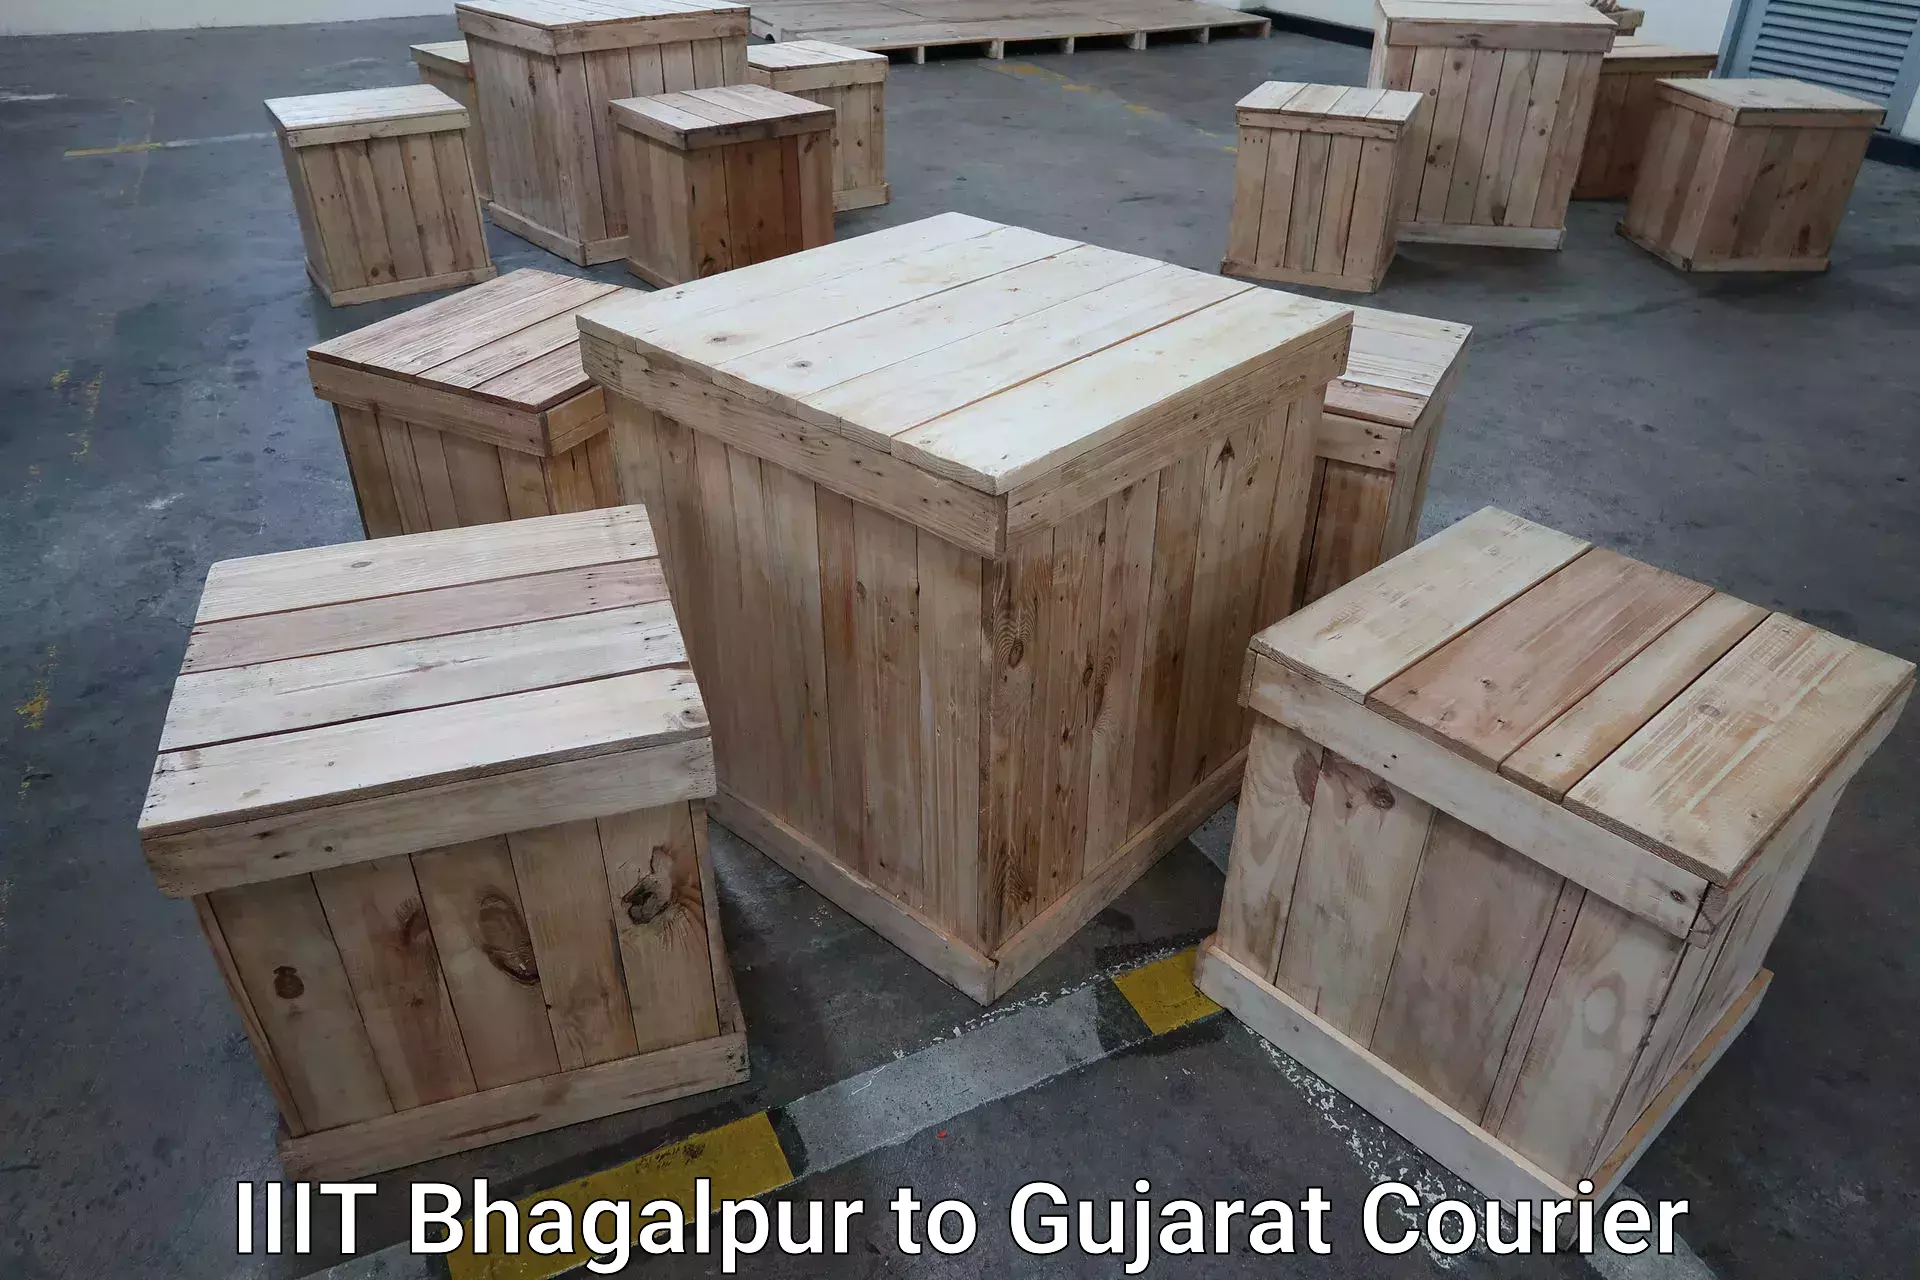 Baggage transport logistics IIIT Bhagalpur to Udhana